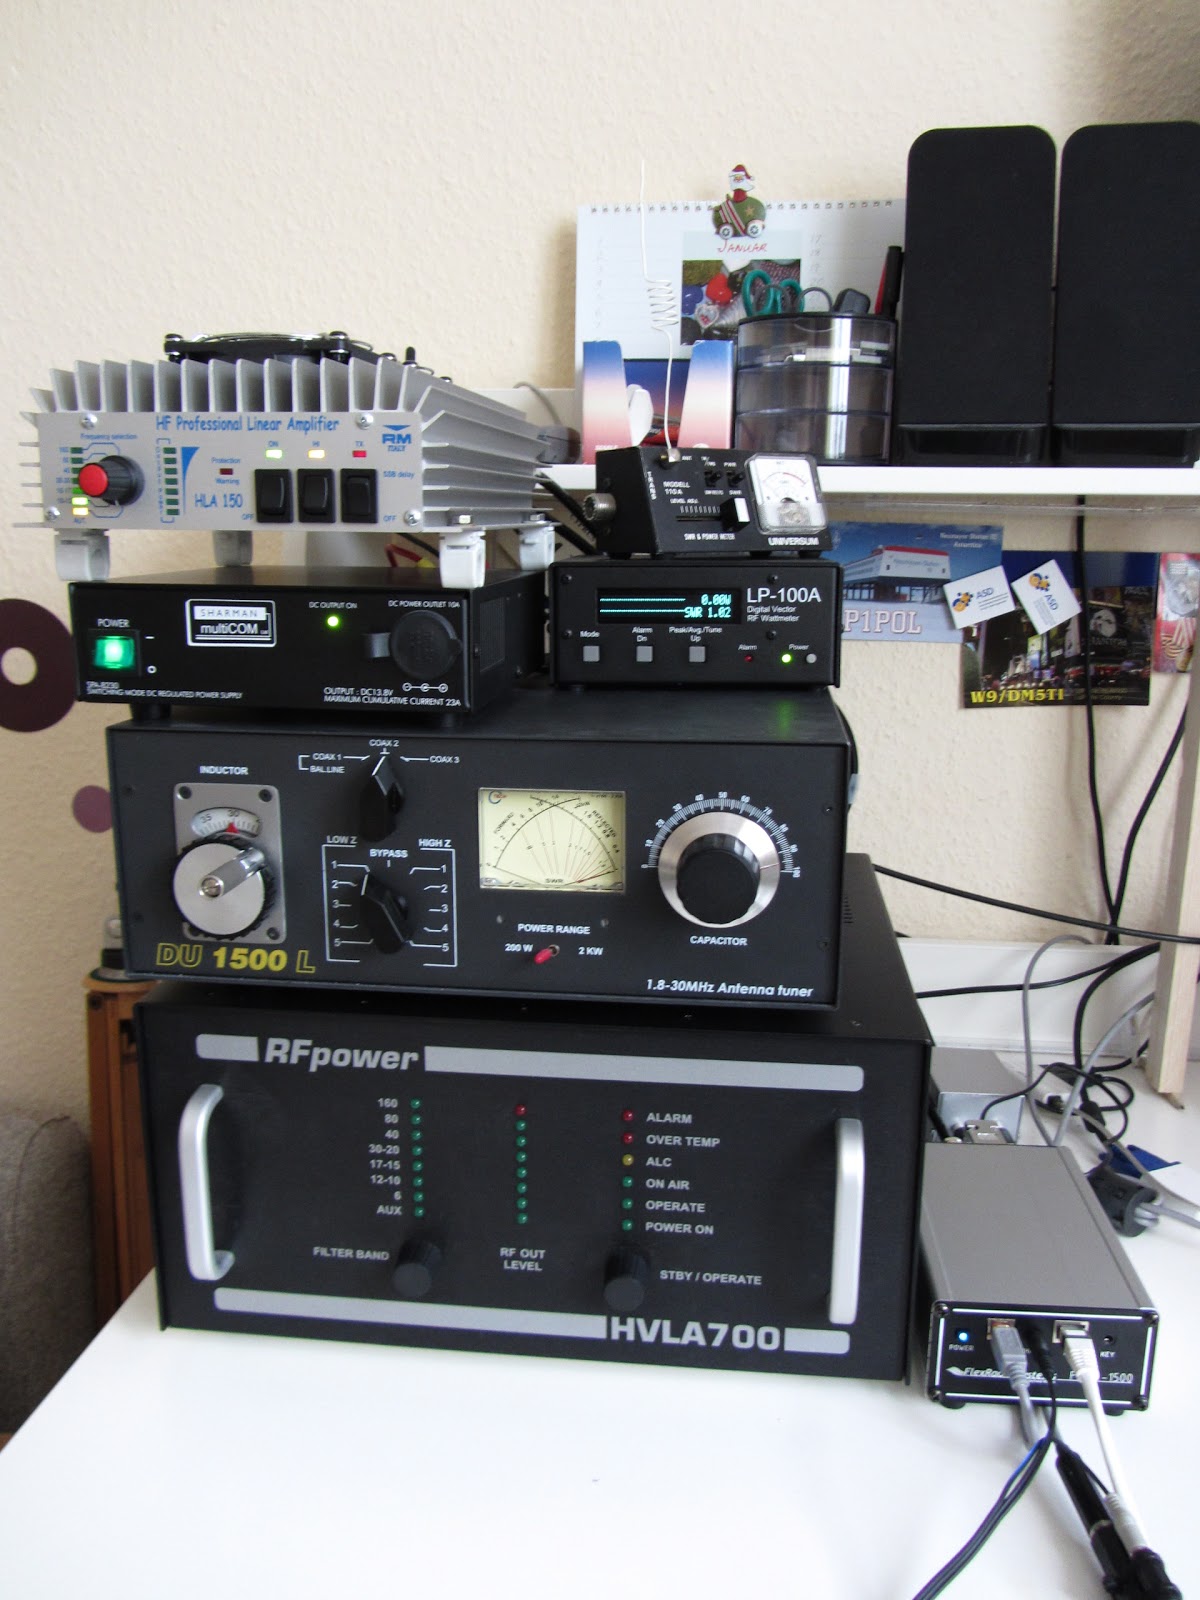 Amateurfunkwelt von DM5HF Flexradio 1500 im Betrieb mit